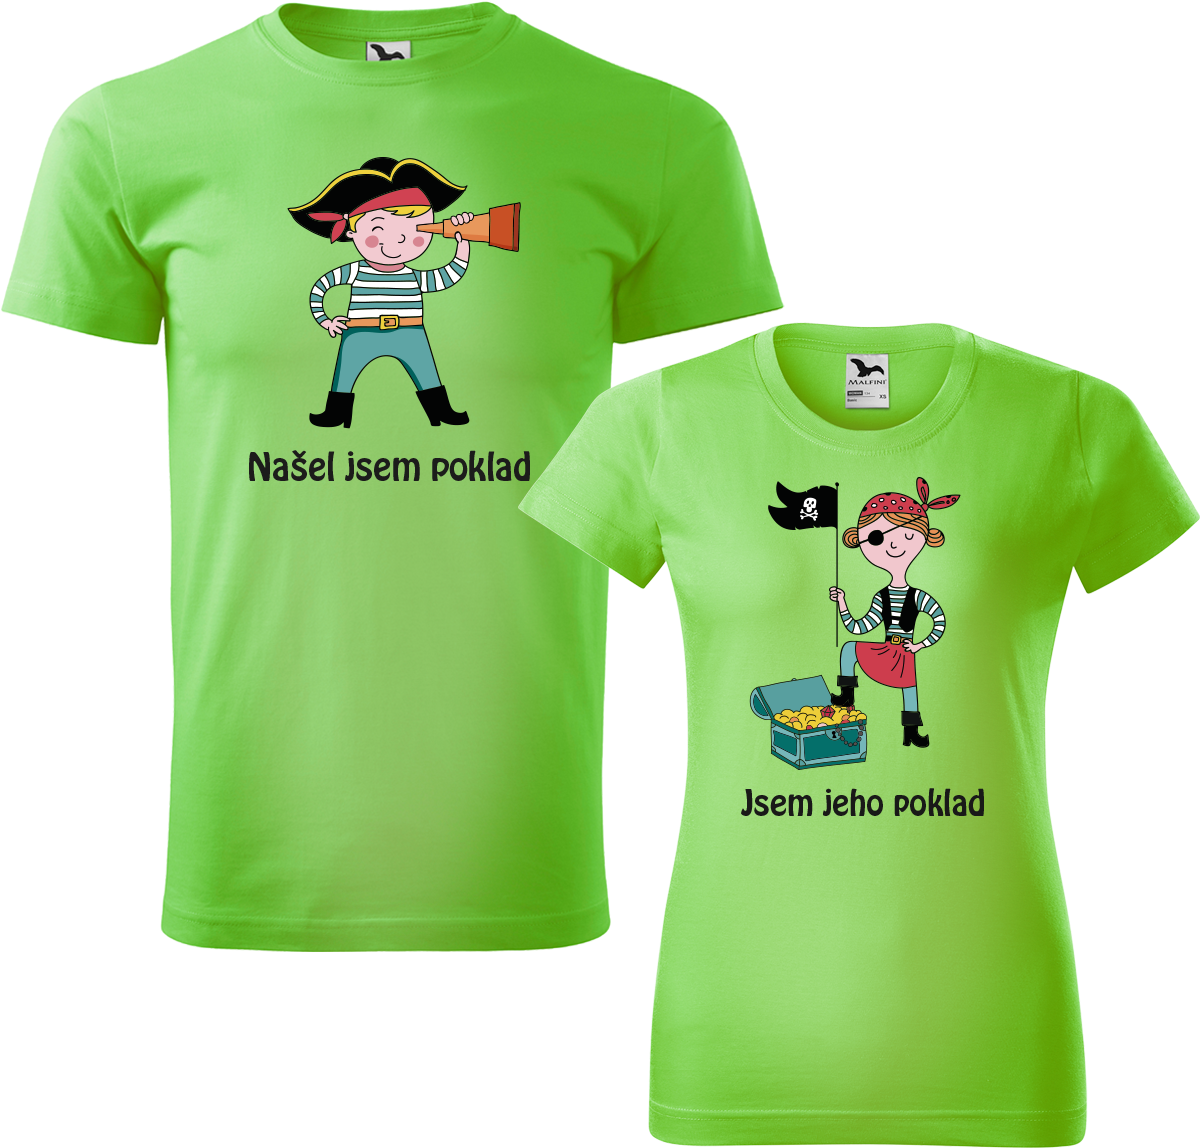 Trička pro páry - Poklad Barva: Apple Green (92), Velikost dámské tričko: XL, Velikost pánské tričko: XL